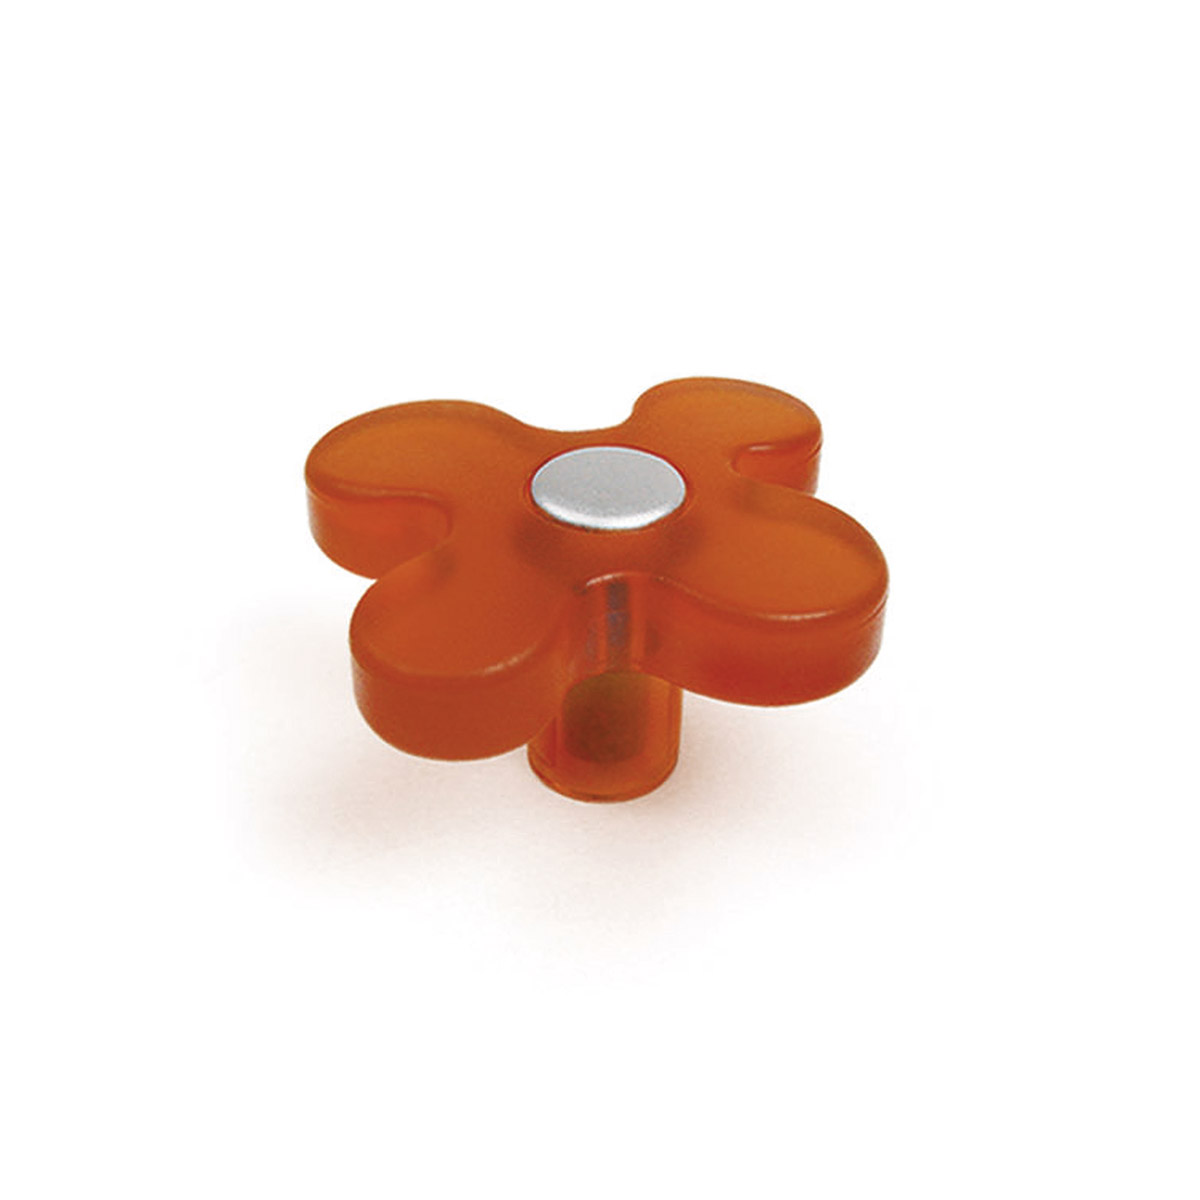 Blister con 6 pomos de plástico con acabado naranja, dimensiones: 50x50x26mm ø: 49mm